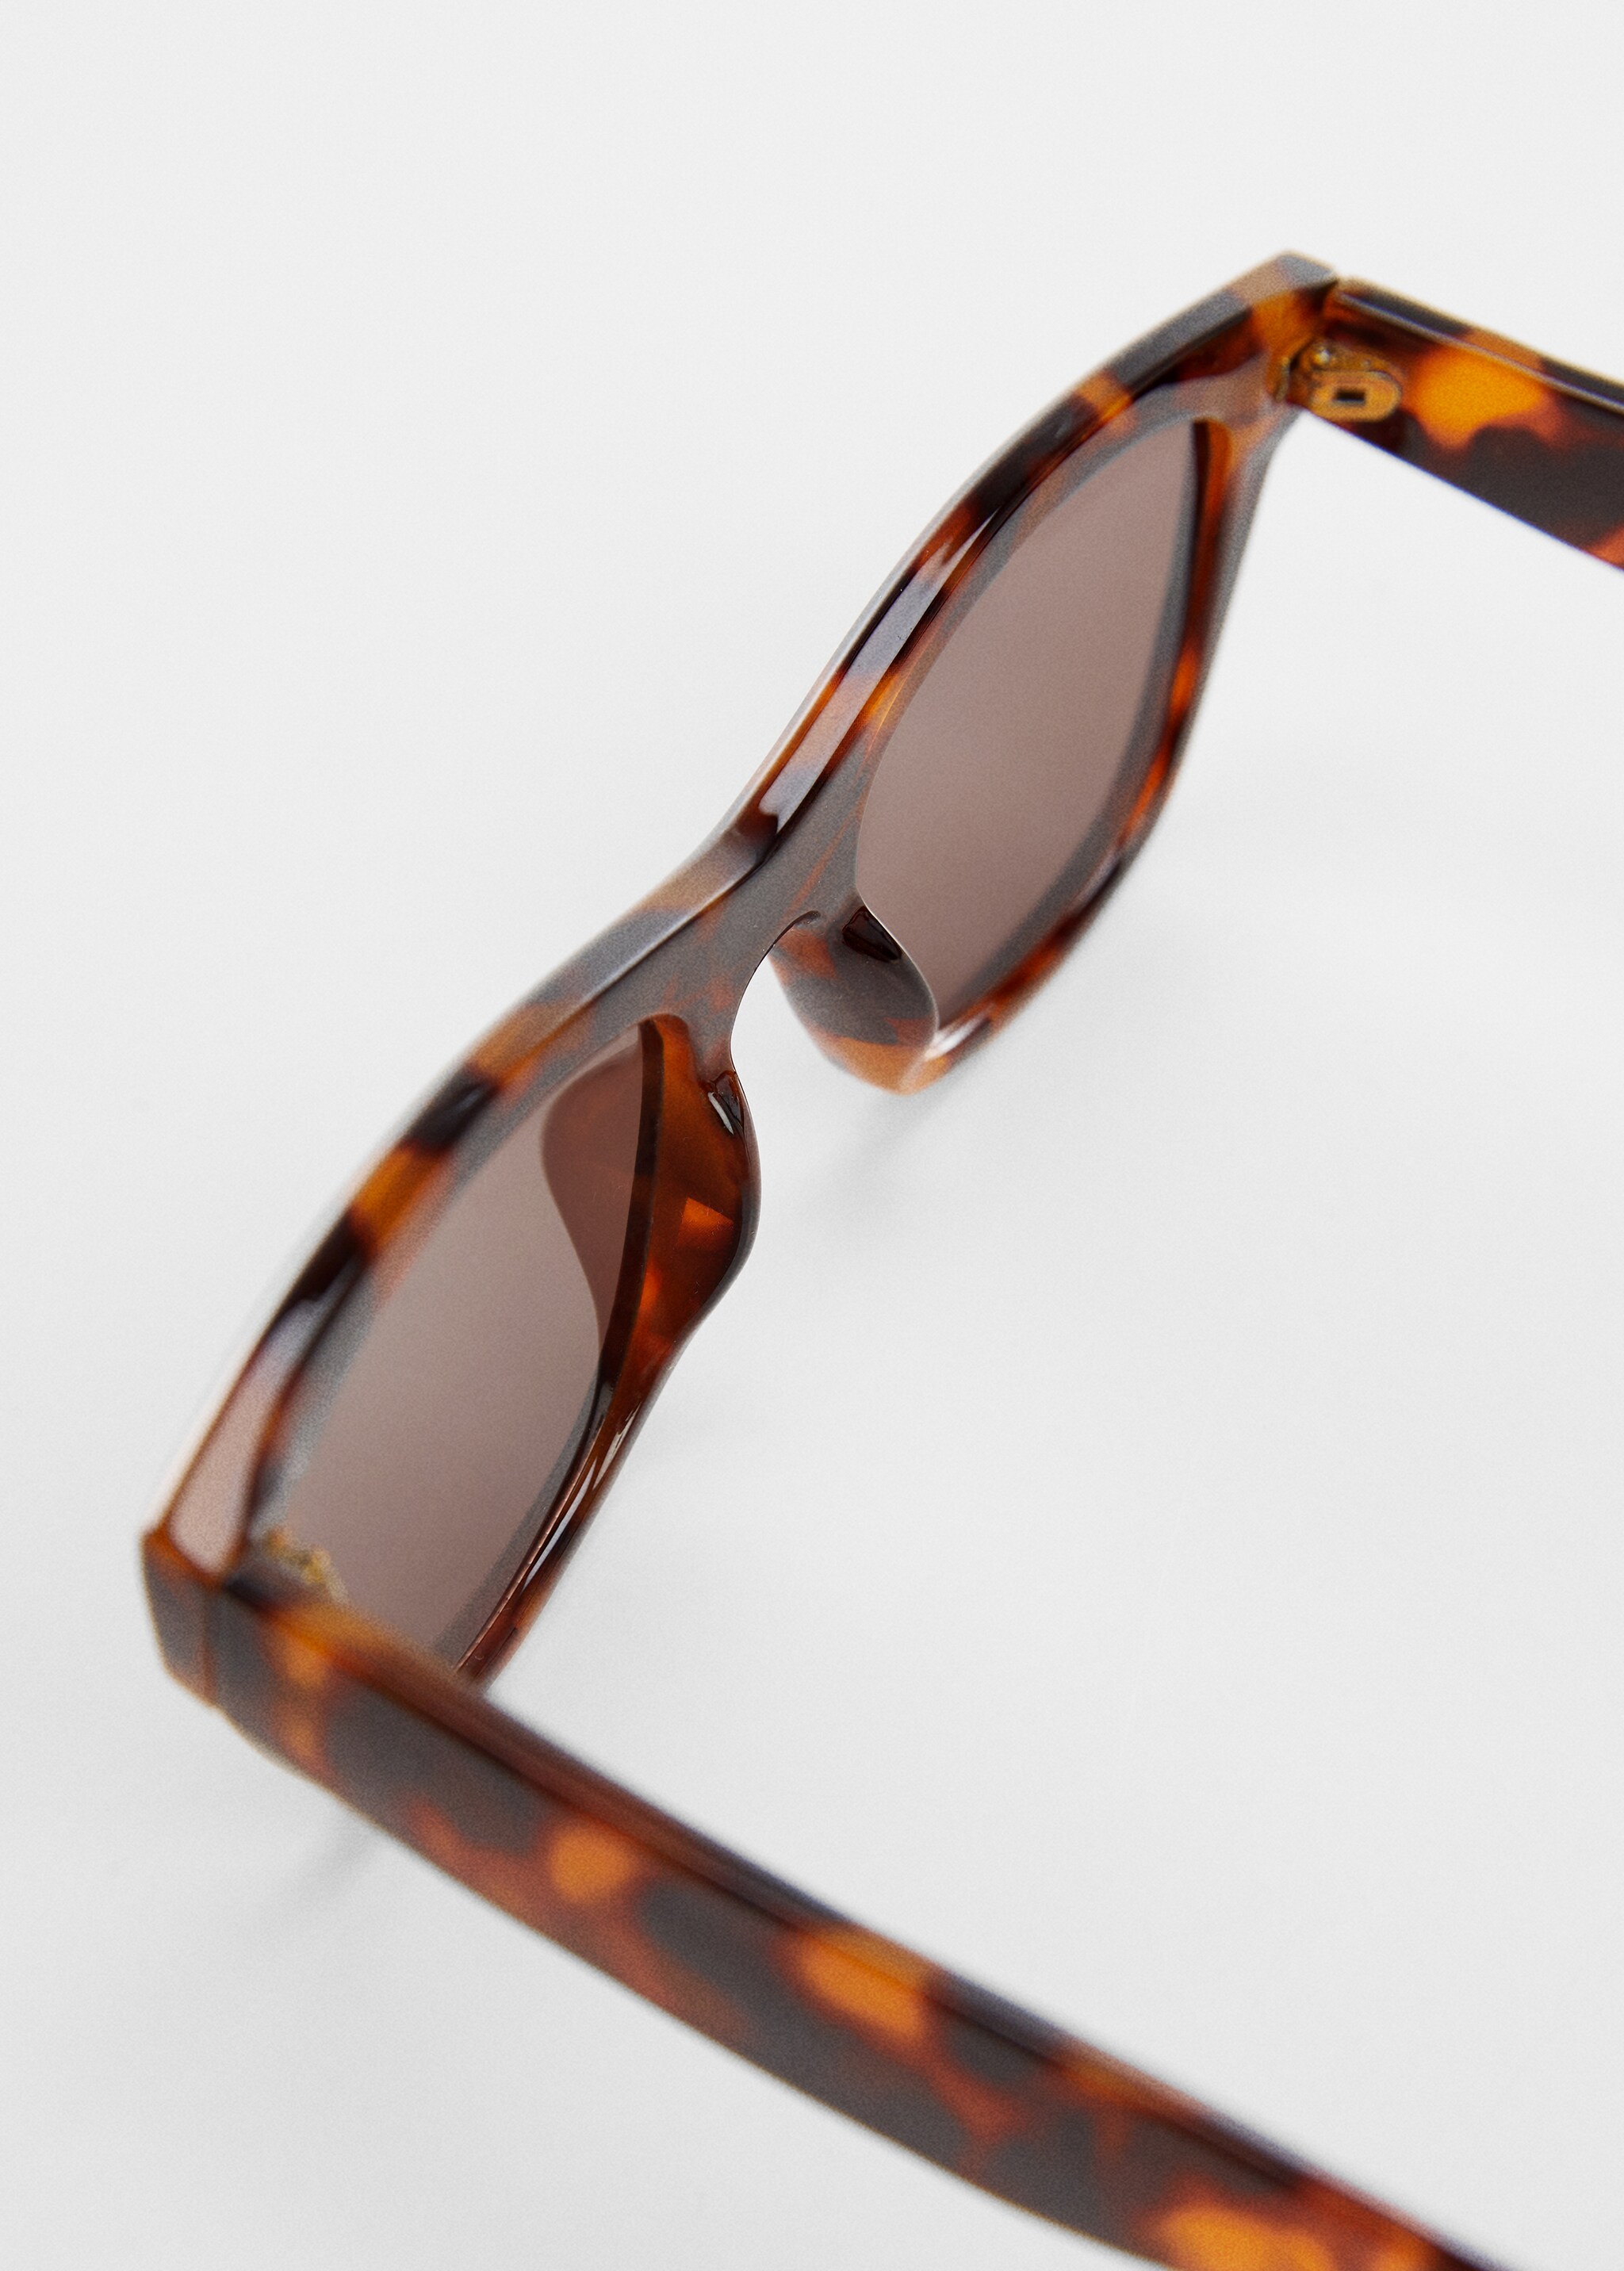 Солнцезащитные очки в пластиковой оправе - Деталь изделия 1